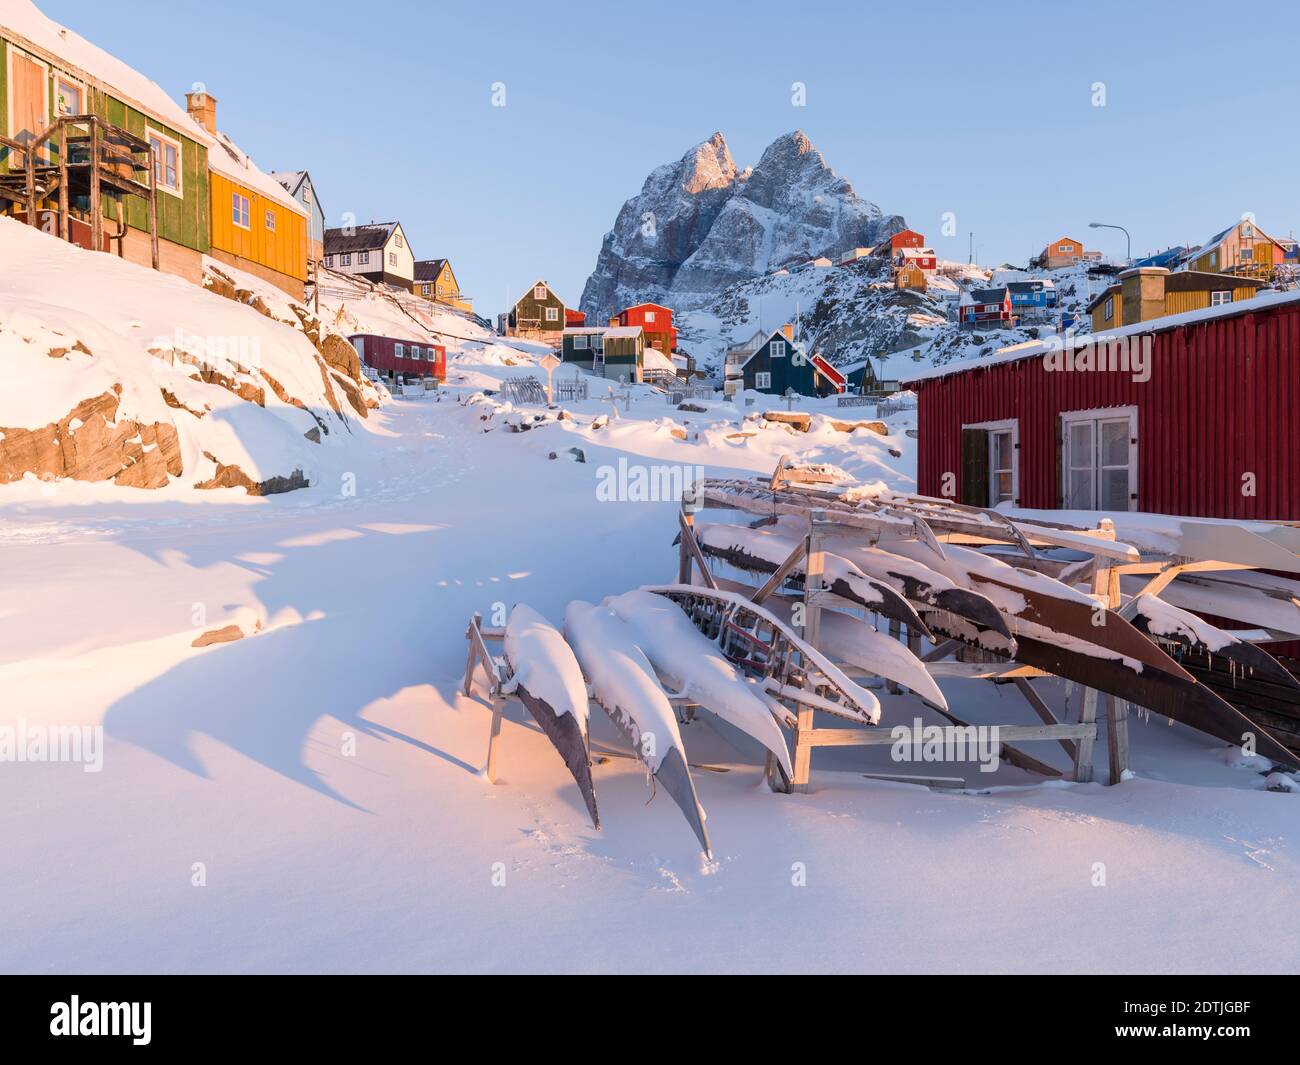 Ville d'Uummannaq pendant l'hiver dans le nord du Groenland. Amérique du Nord, Danemark, Groenland Banque D'Images